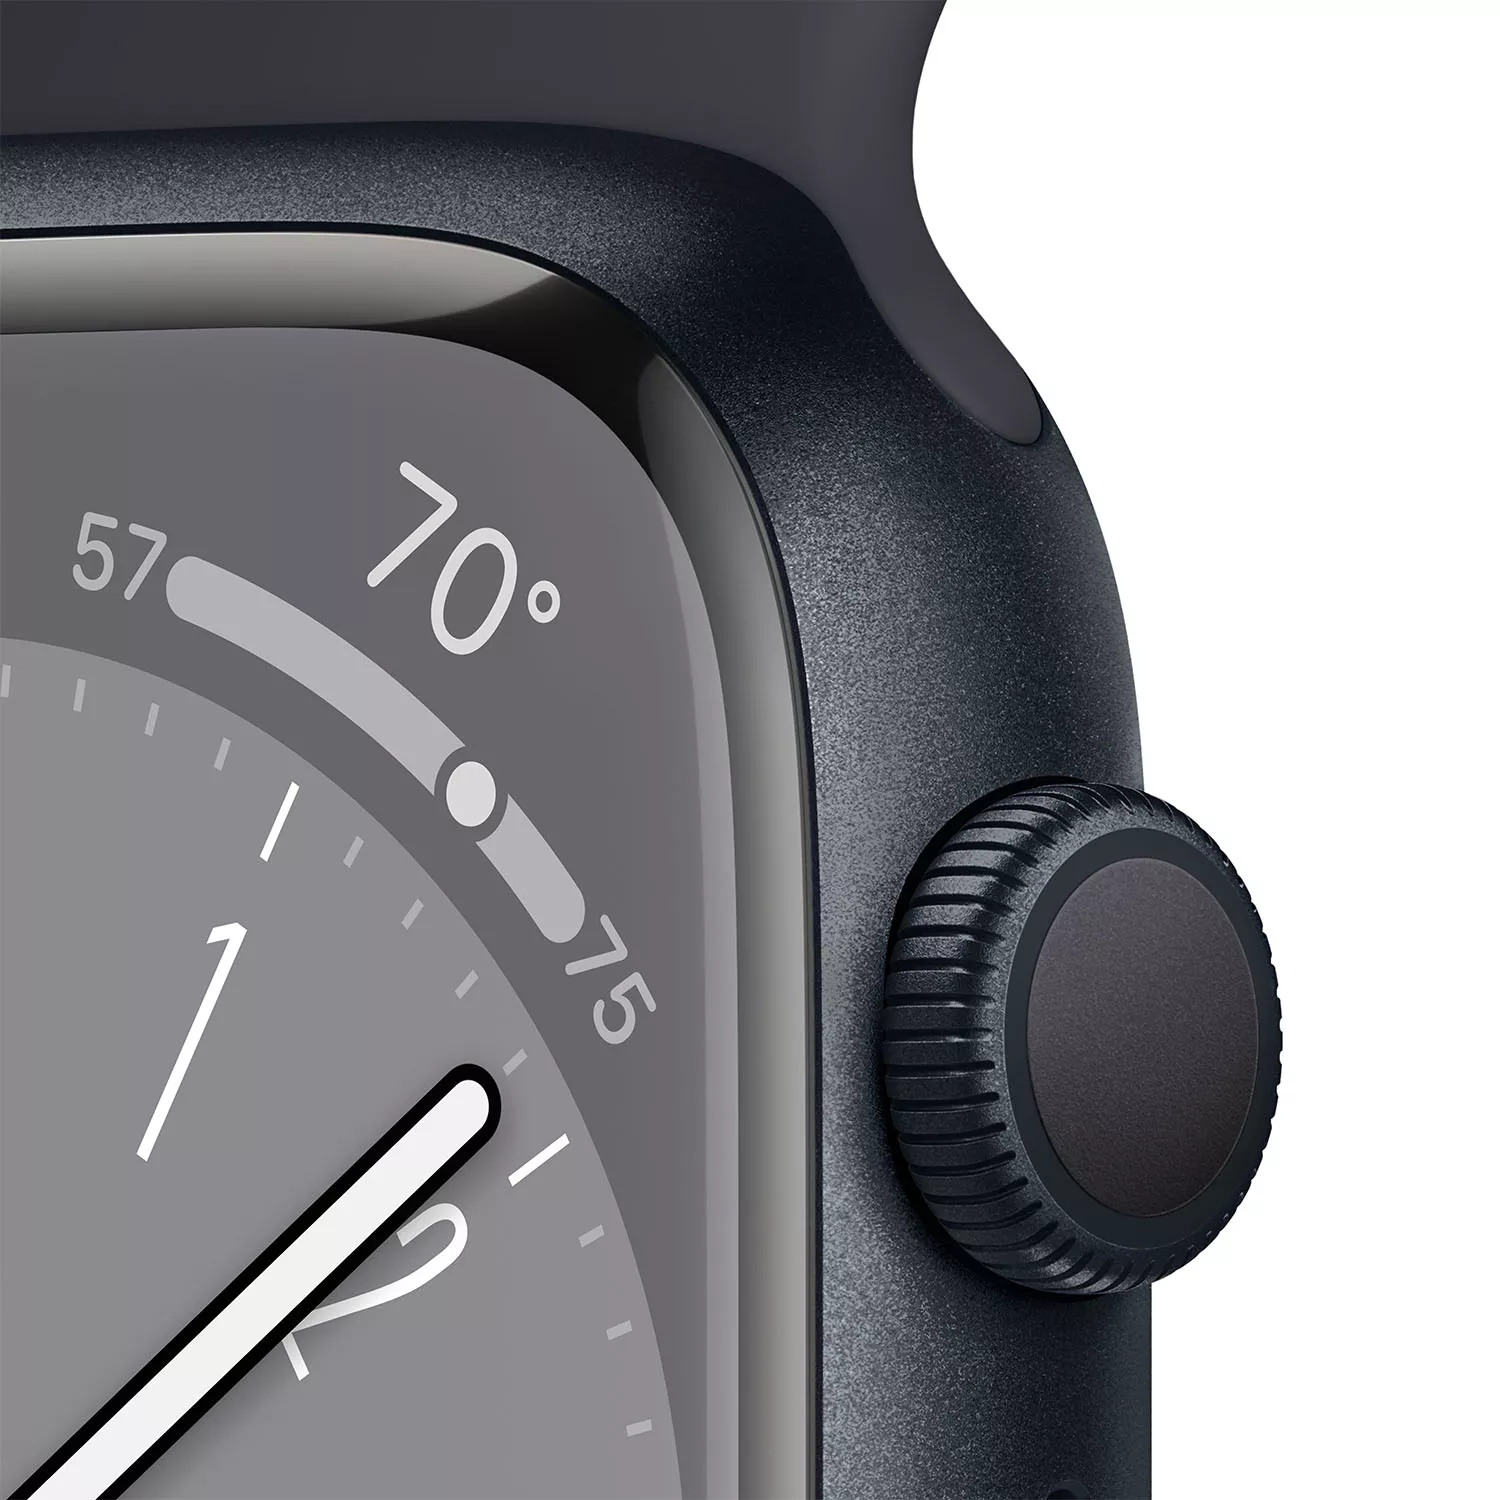 Apple Watch Series 8 41mm, алюминий «тёмная ночь», спортивный ремешок цвета «тёмная ночь» S-M